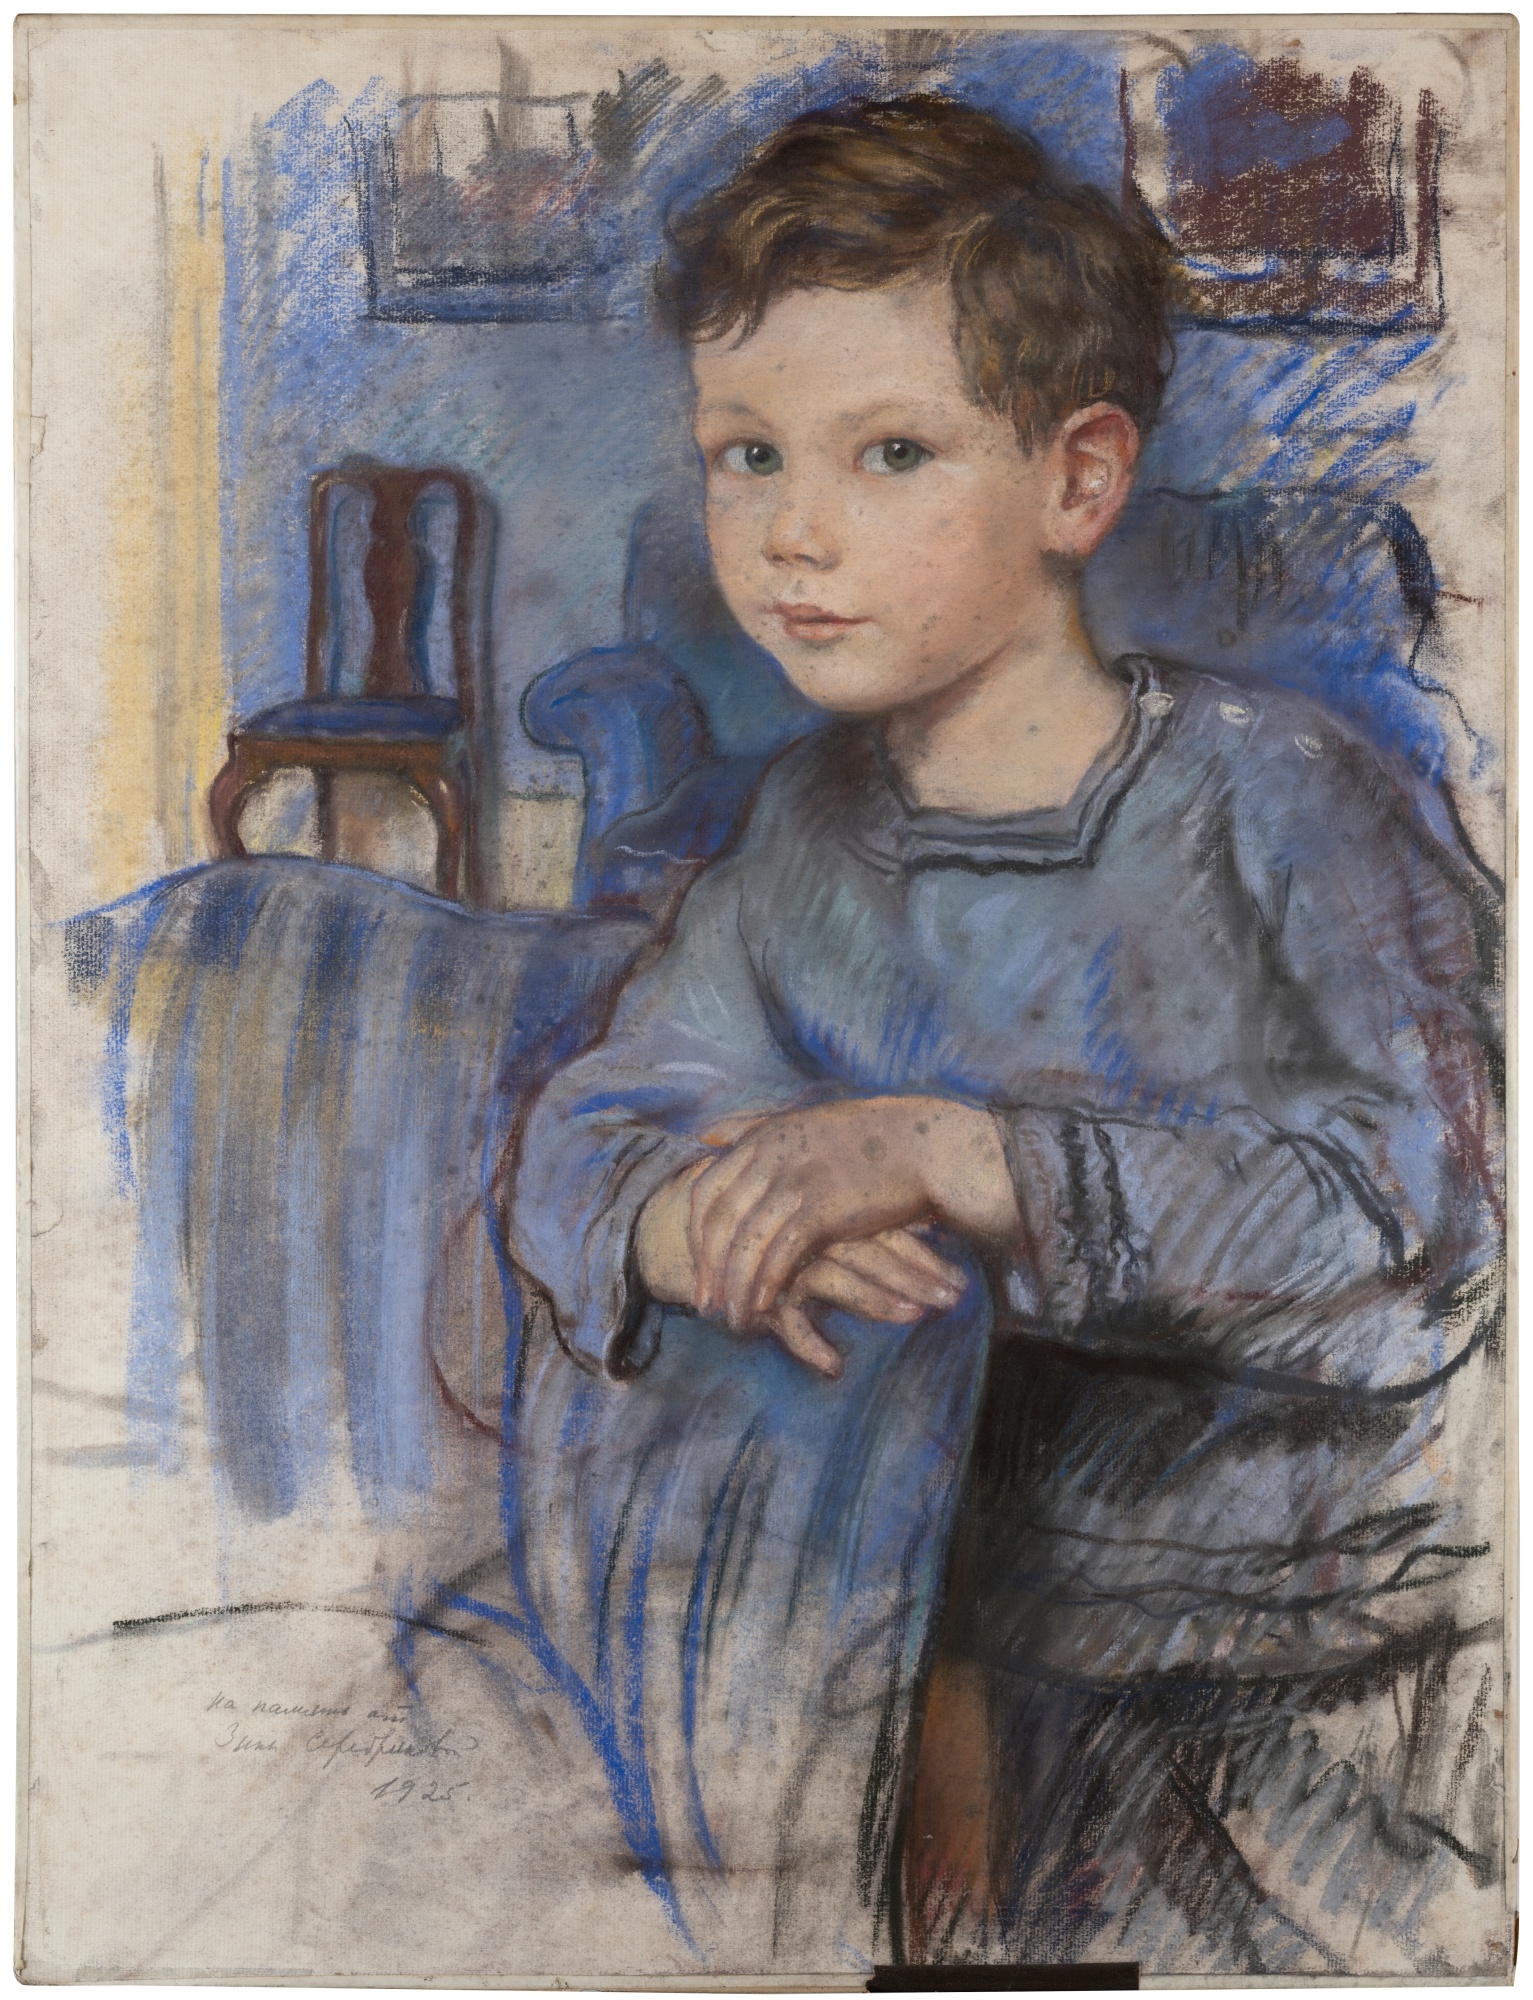 Portrait de Peter Ustinov enfant - Zinaida Yevgenyevna Serebryakova